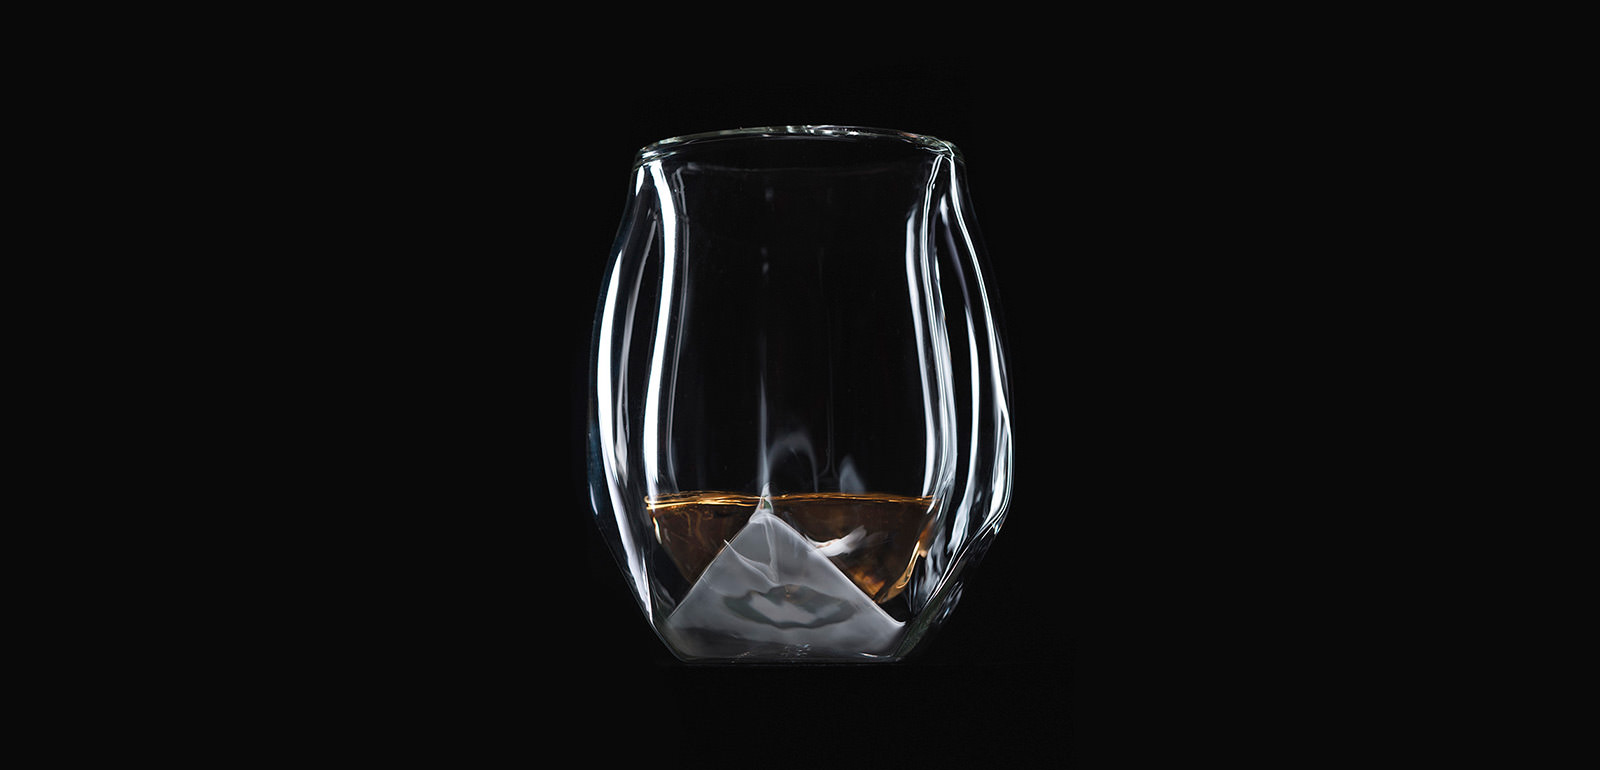 https://imboldn.com/wp-content/uploads/2016/11/Norlan-Whisky-Glass-main.jpg